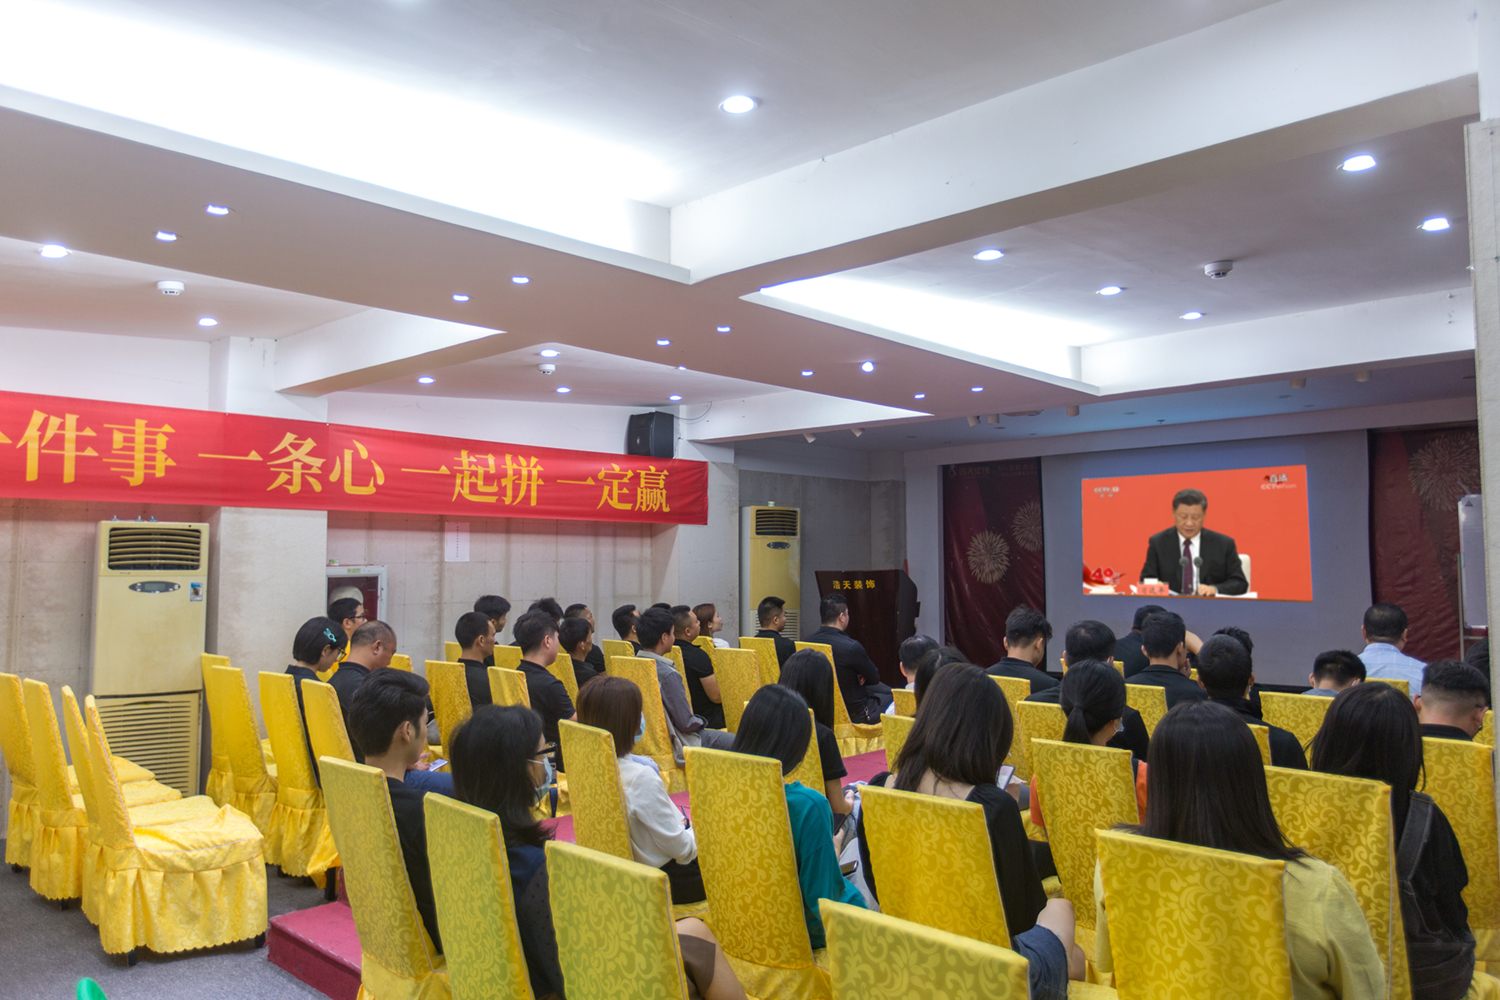 浩天集团组织全员学习习近平总书记在庆祝改革开放40周年大会上重要讲话精神